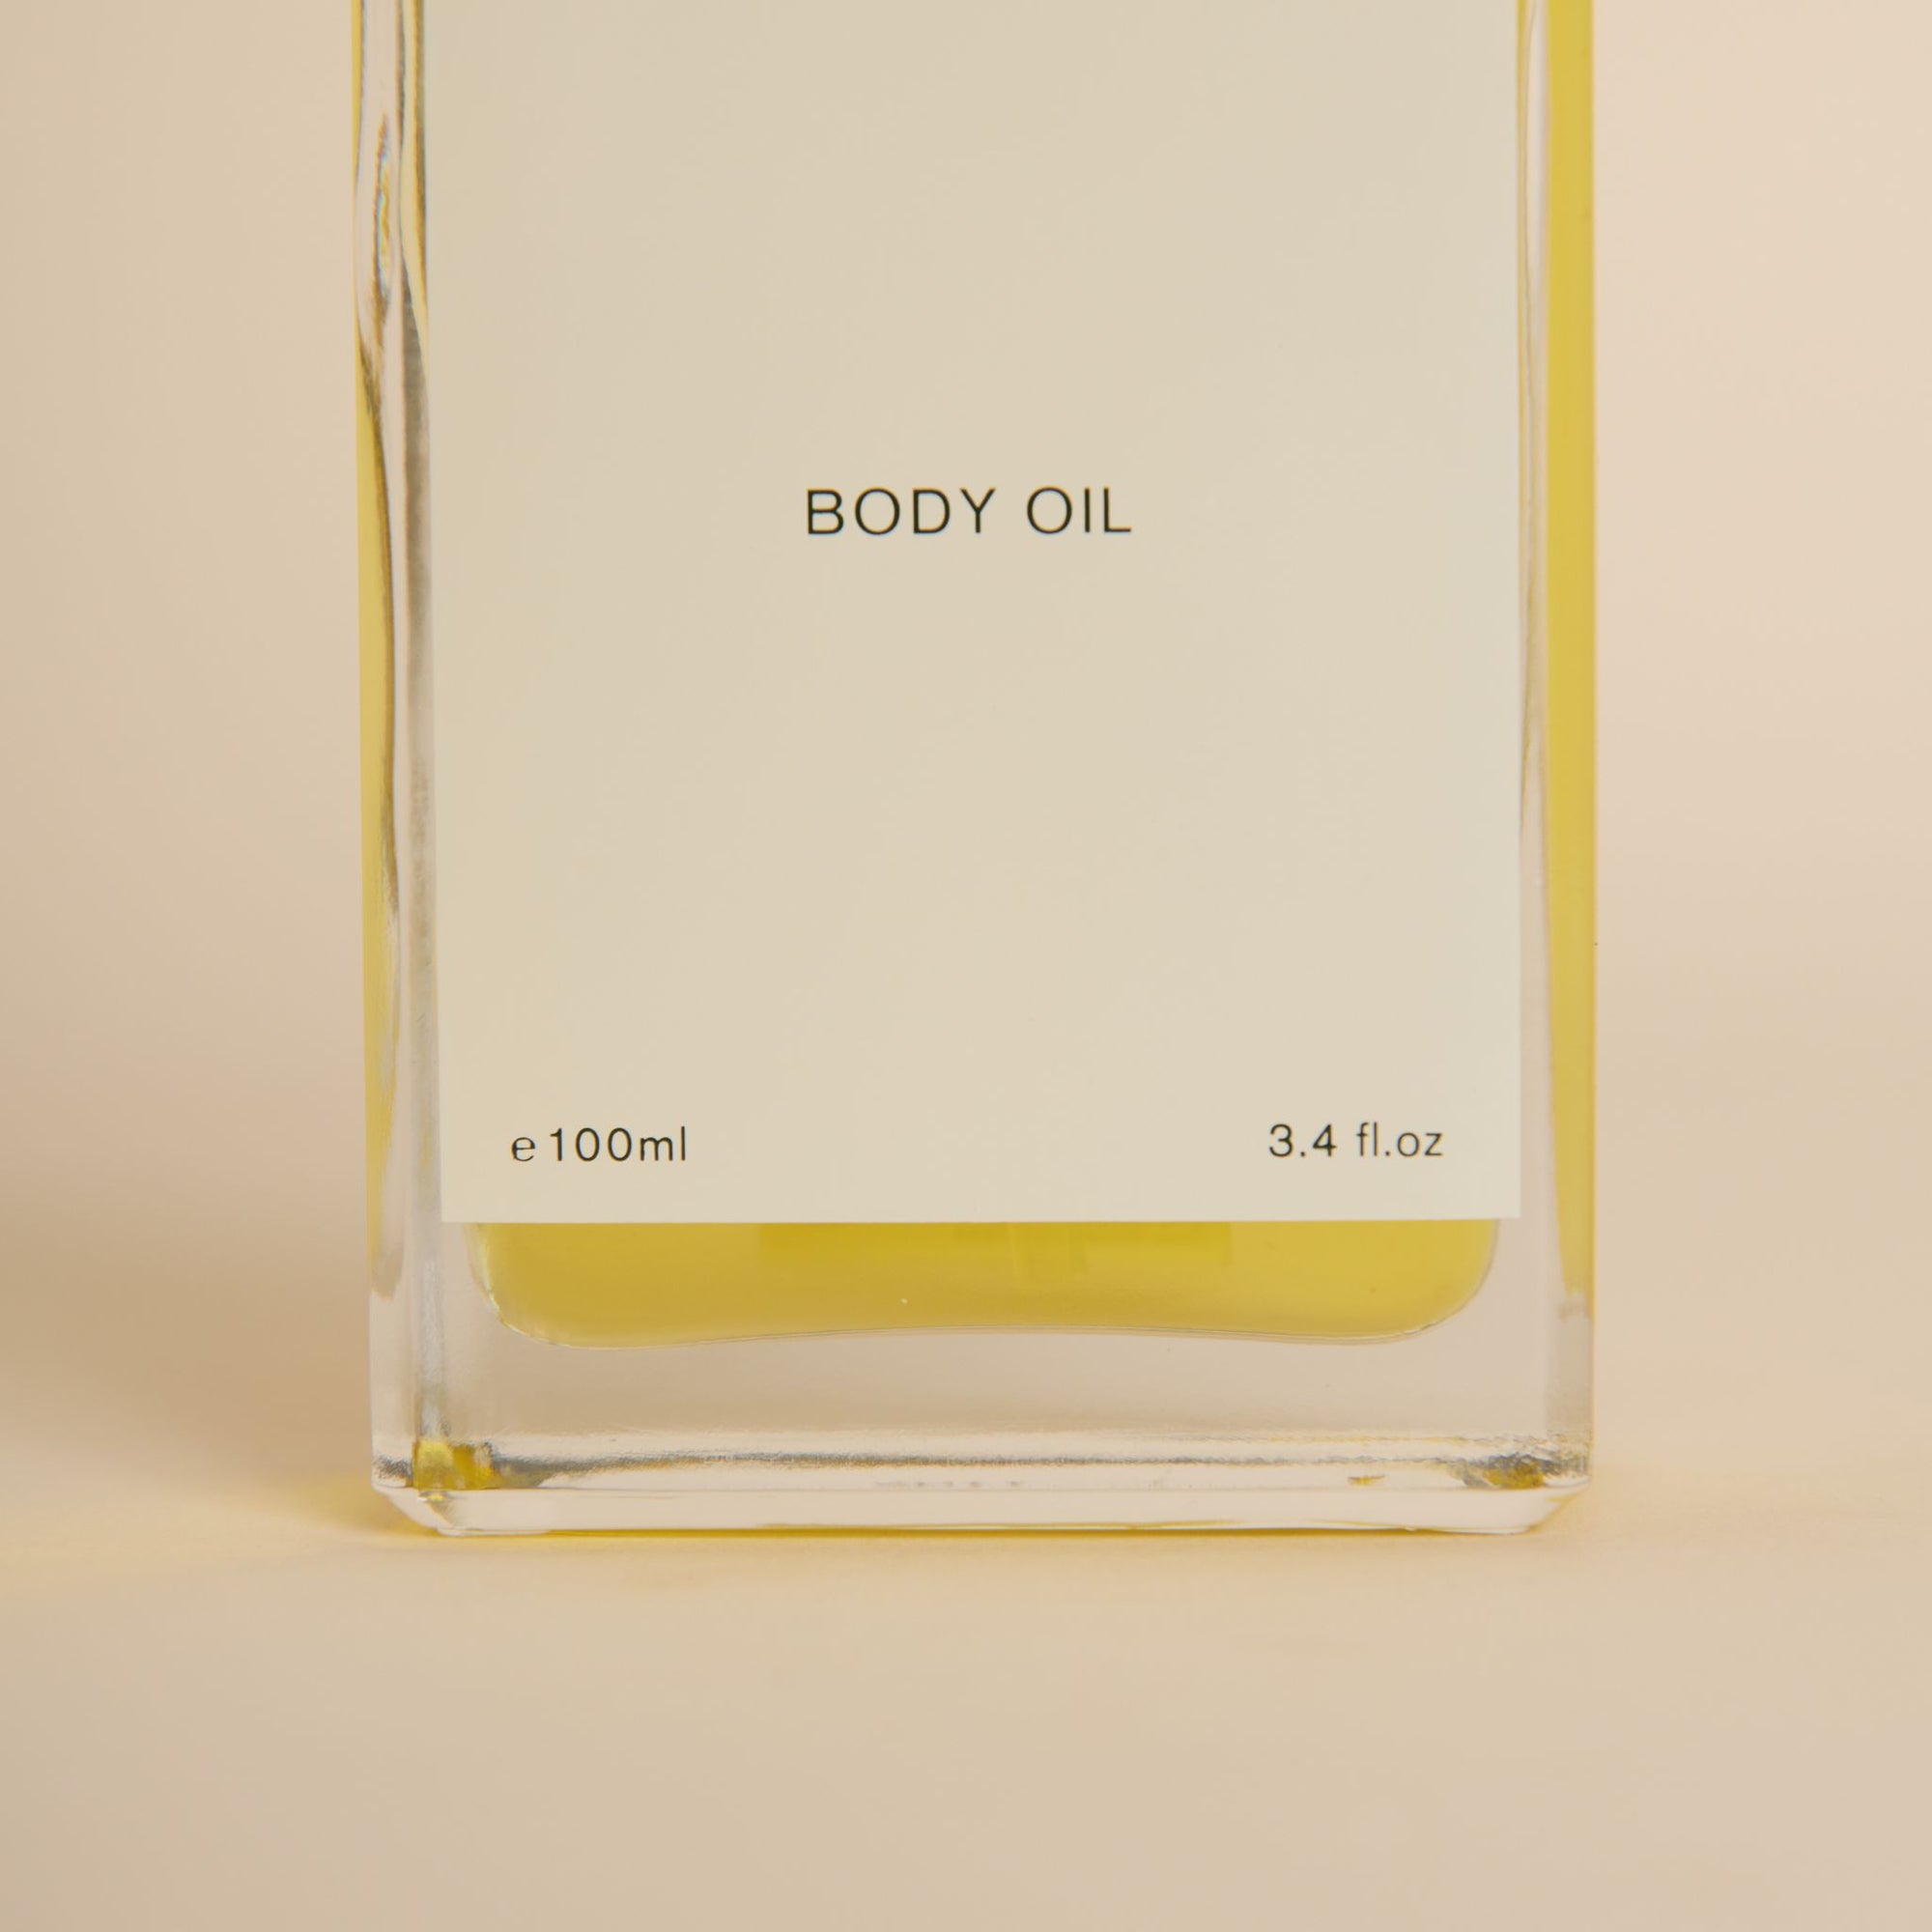 F. Miller Body Oil